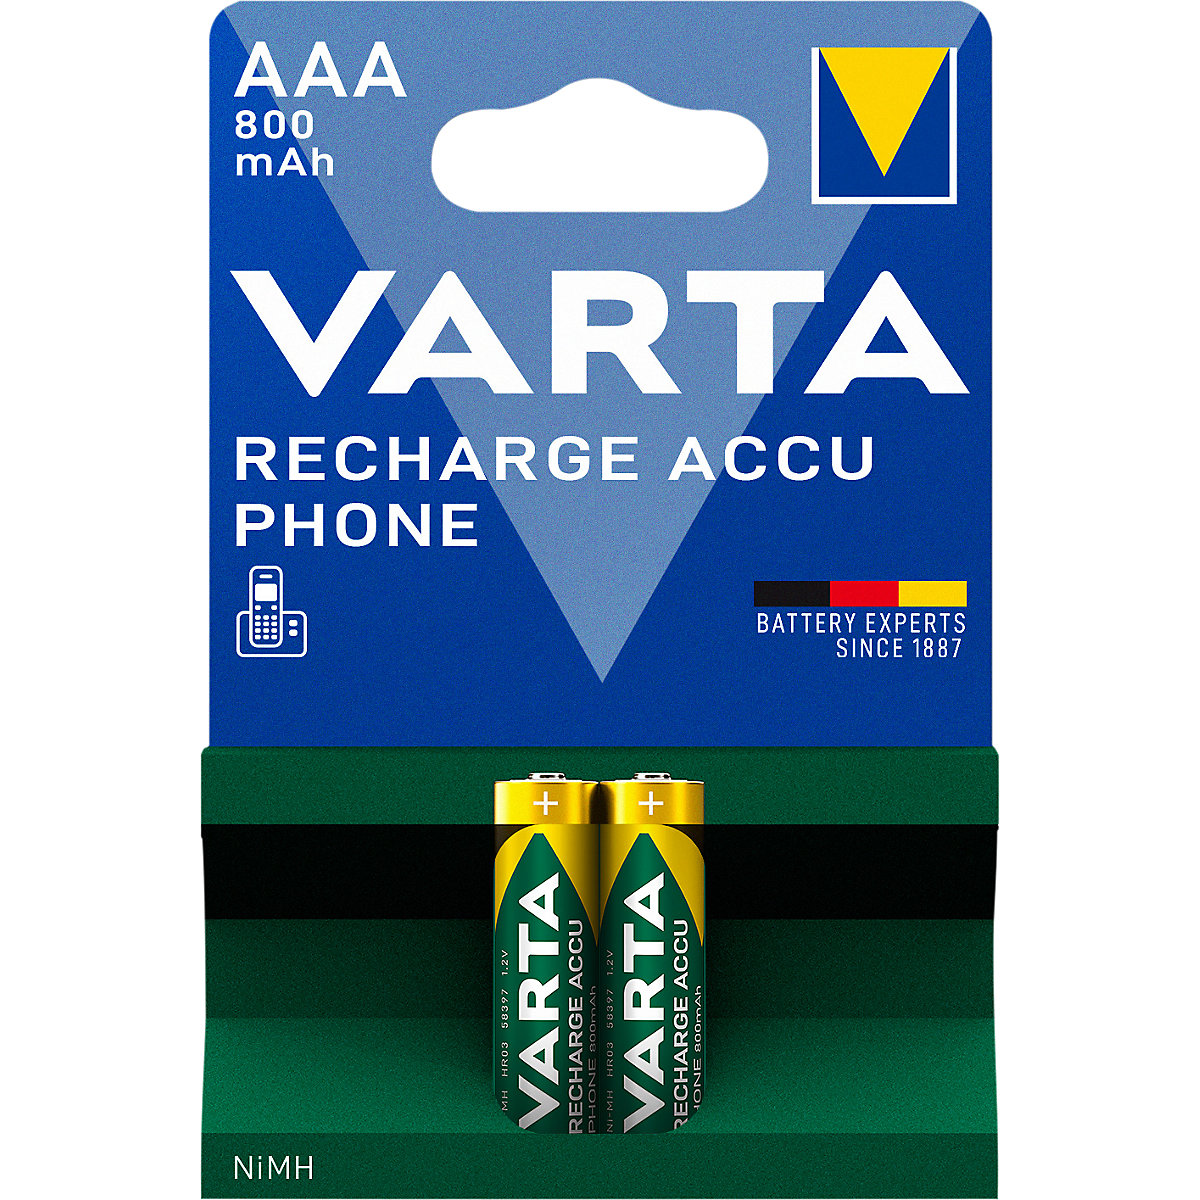 Batteria per telefoni cordless, ricaricabile – VARTA: AAA, 800 mAh